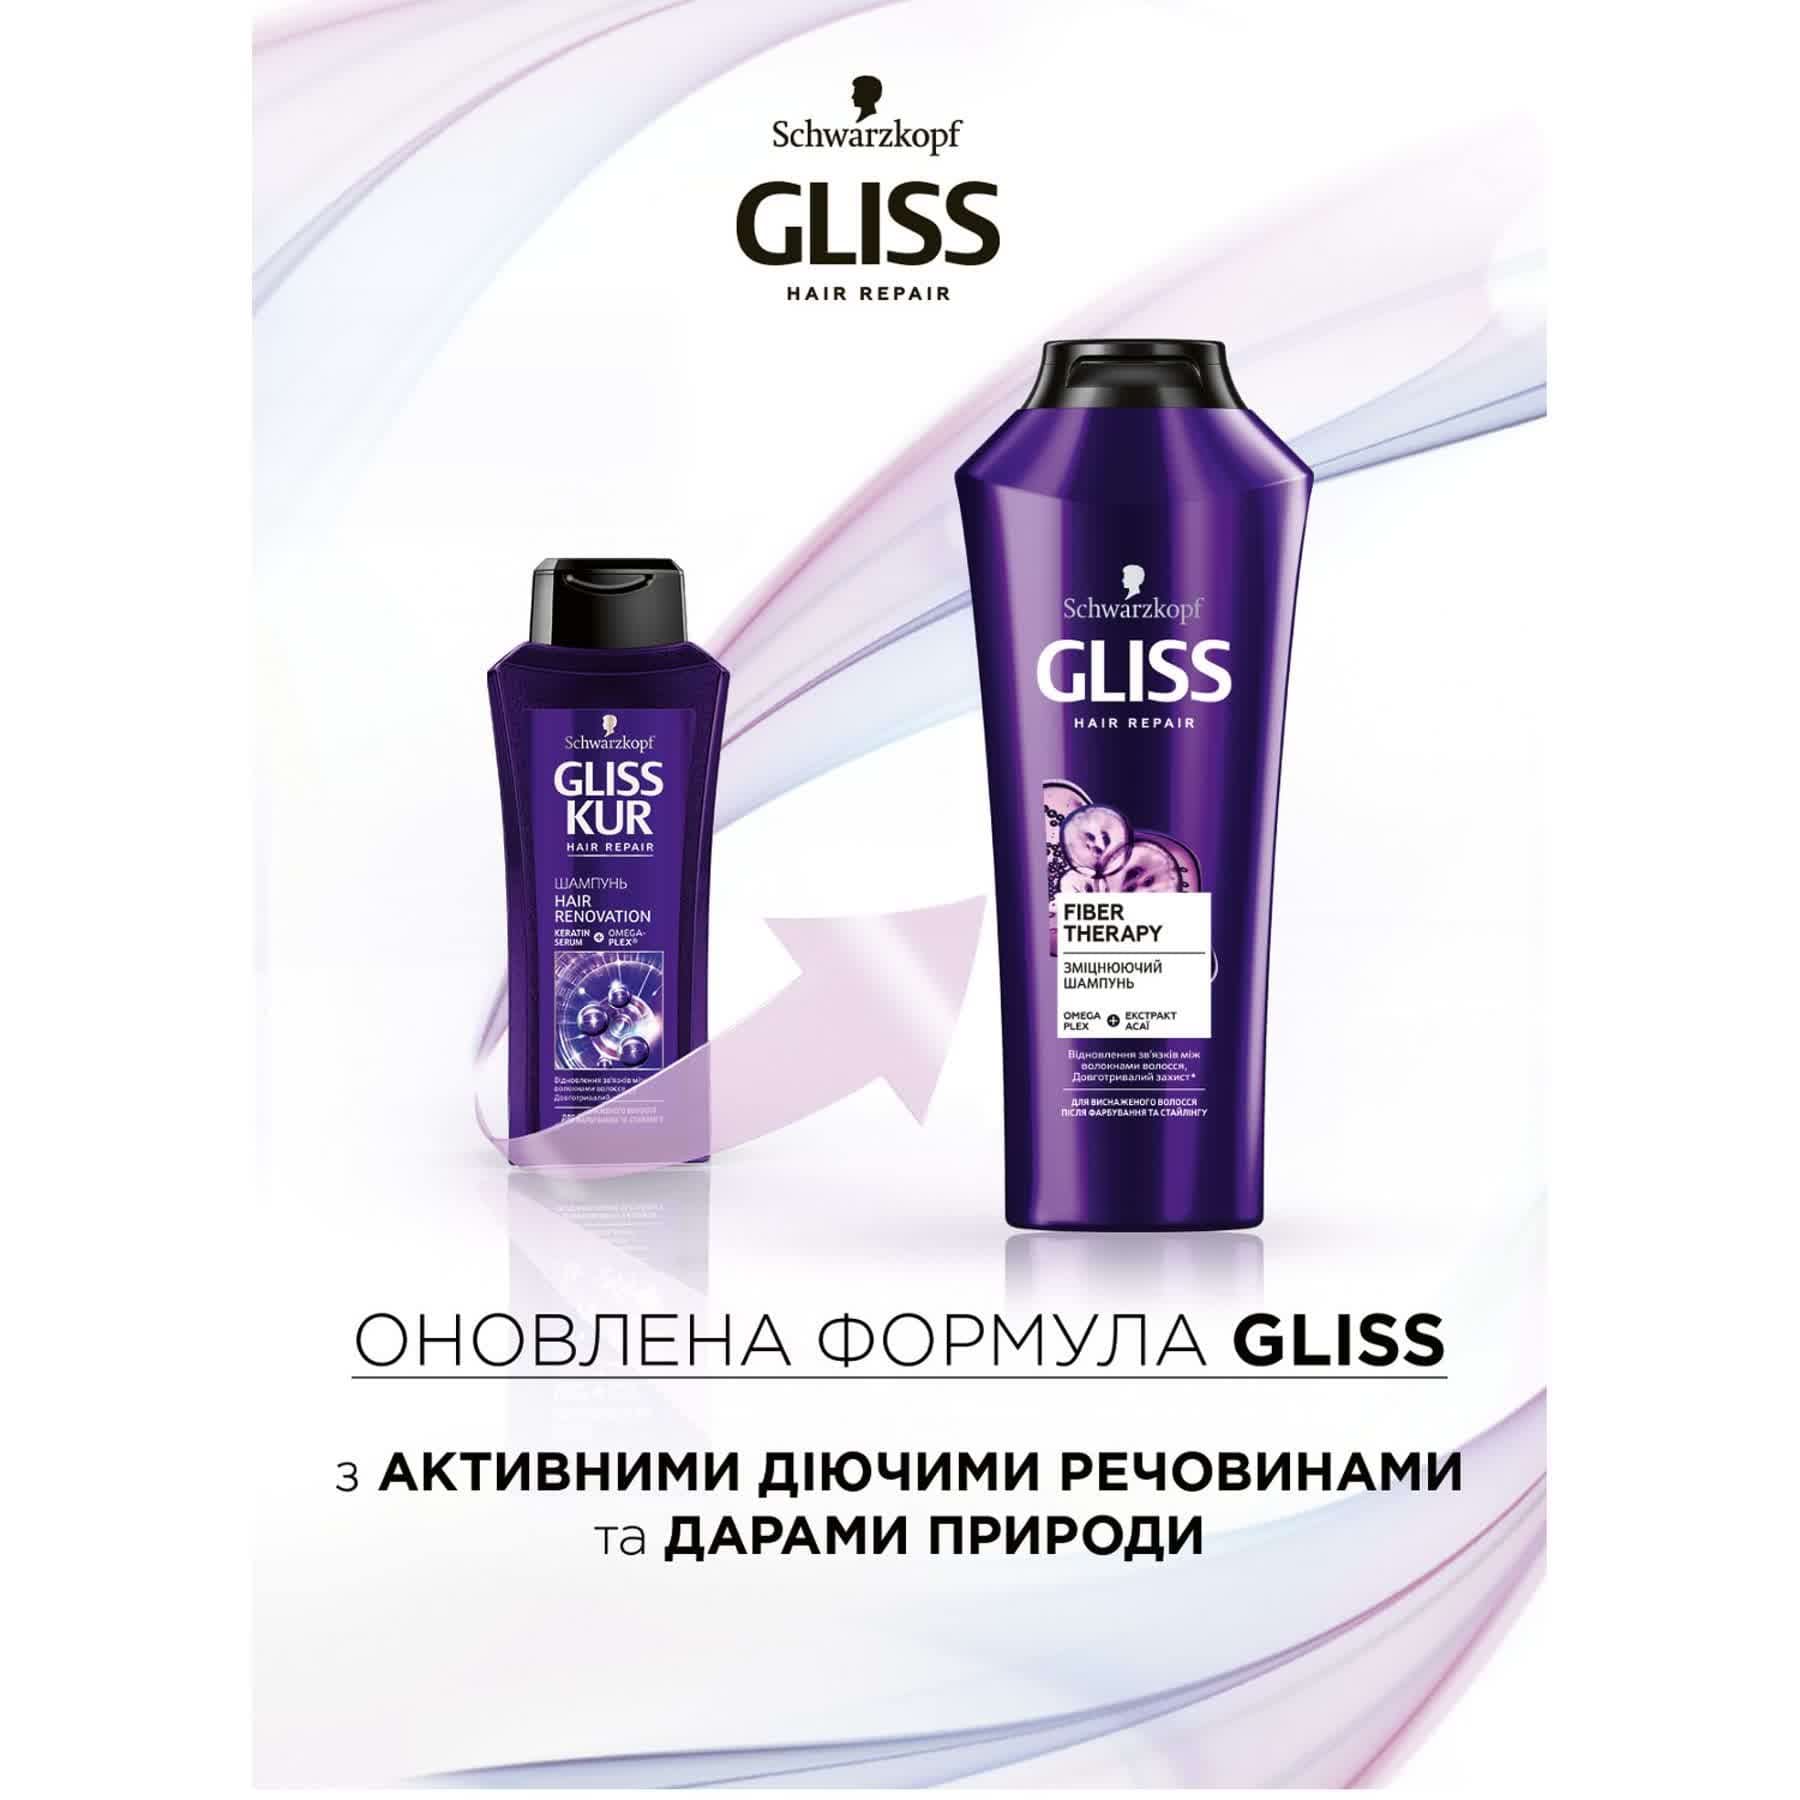 Укрепляющий шампунь GLISS Fiber Therapy для истощенных волос после окрашивания и стайлинга, 400 мл.